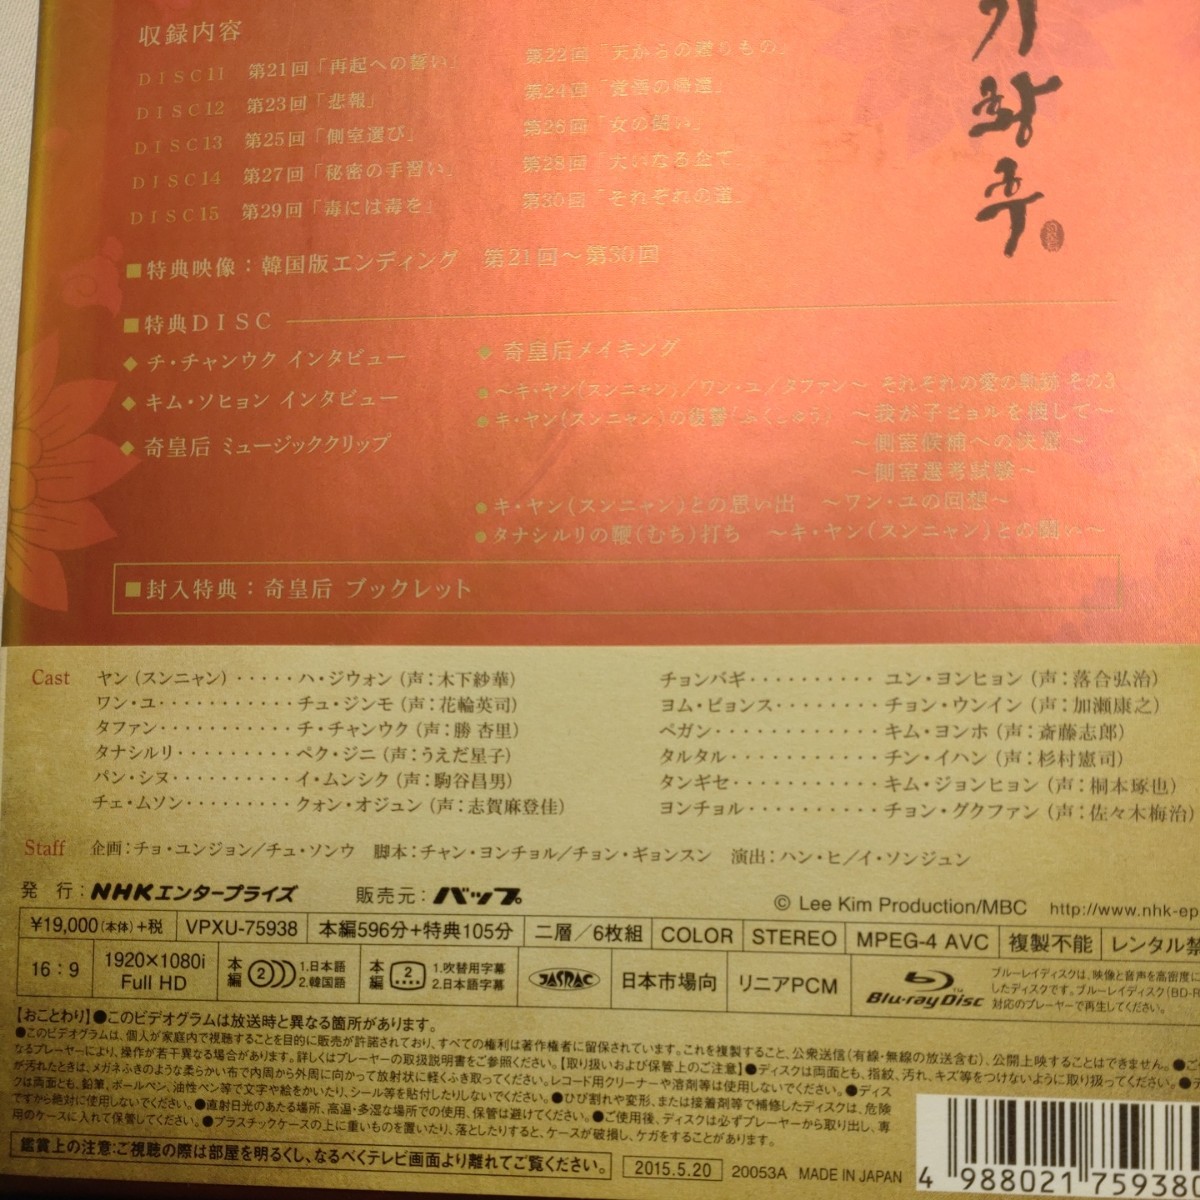 奇皇后Blu-ray　全巻　奇皇后-ふたつの愛 涙の誓い- ブルーレイBOX 全5BOXセット 中古品プラス非売品DVDあり